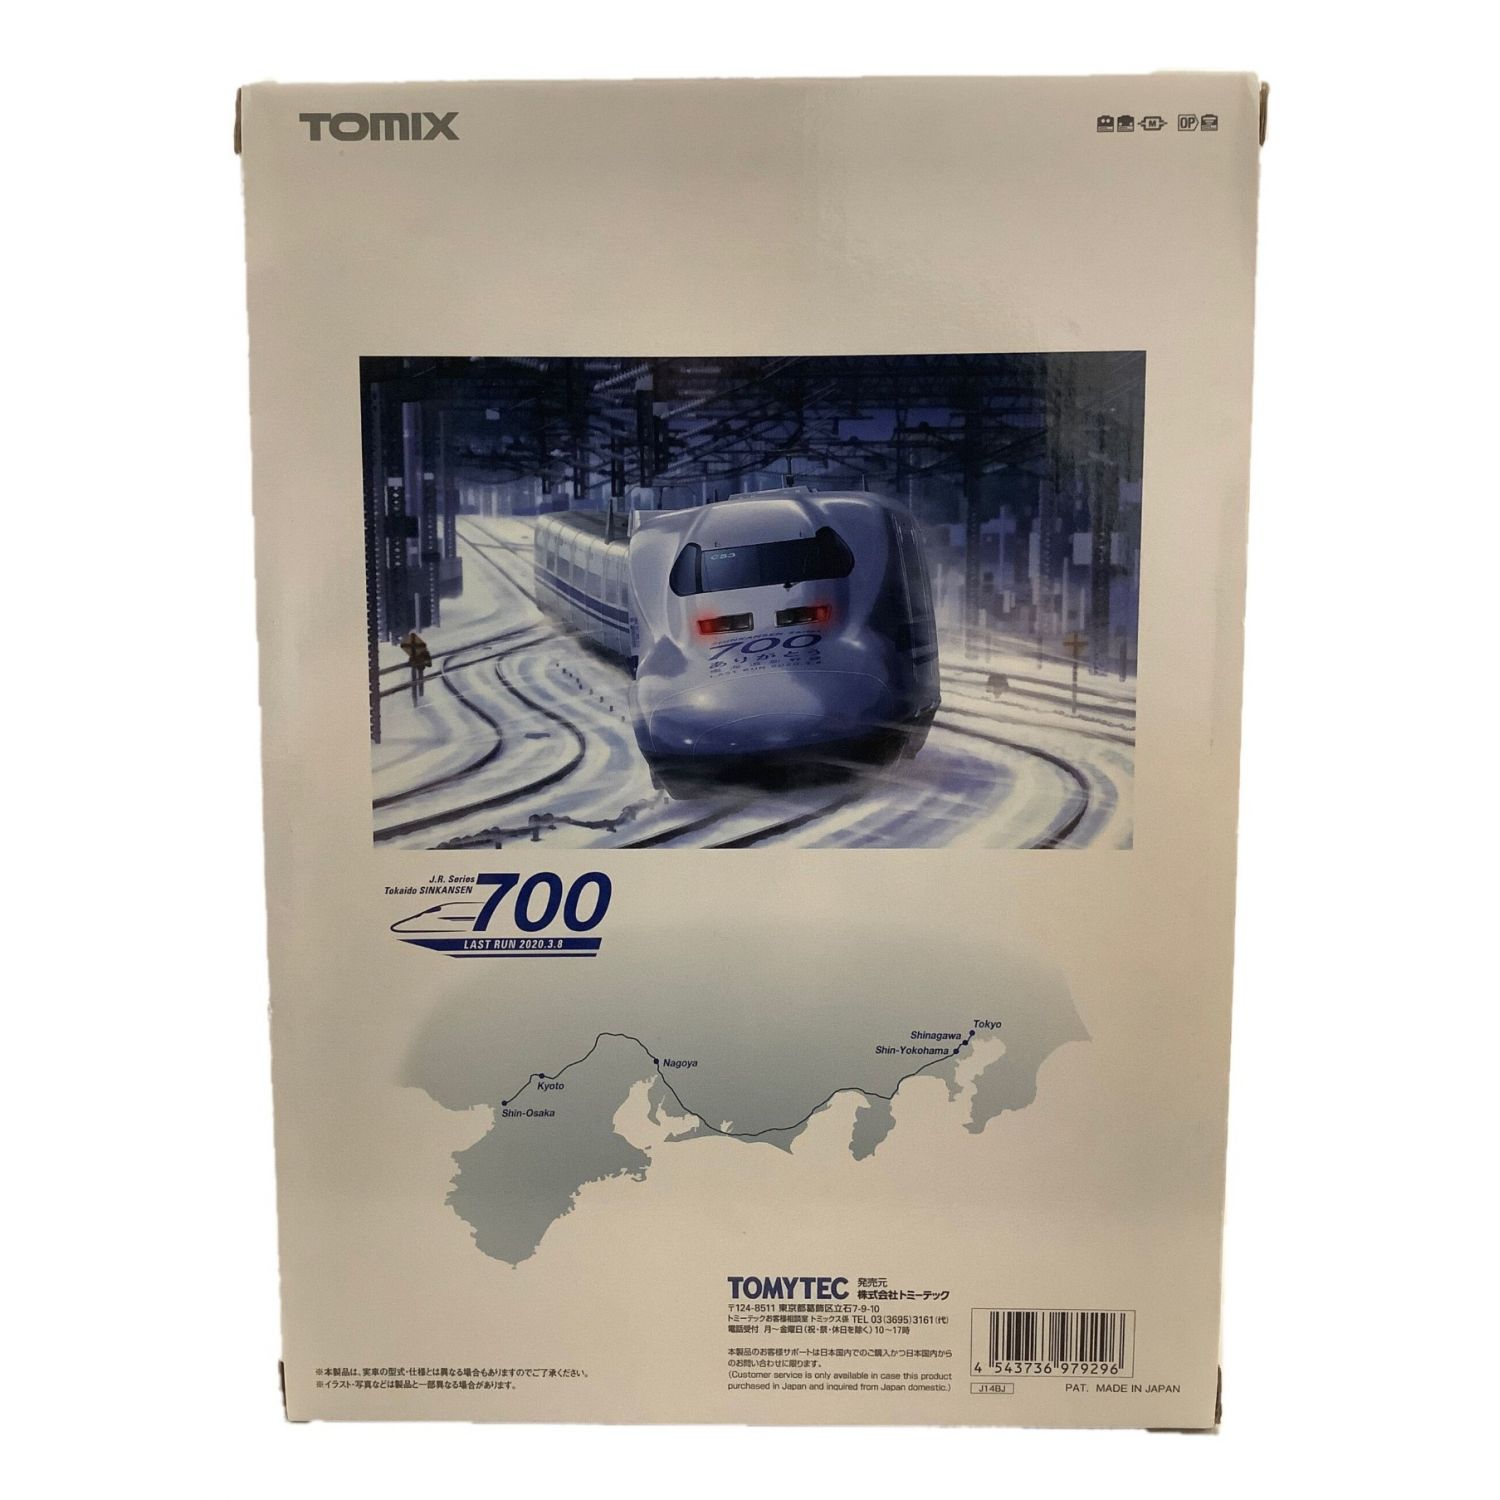 TOMIX (トミックス) Nゲージ ありがとう東海道新幹線700系セット限定品 